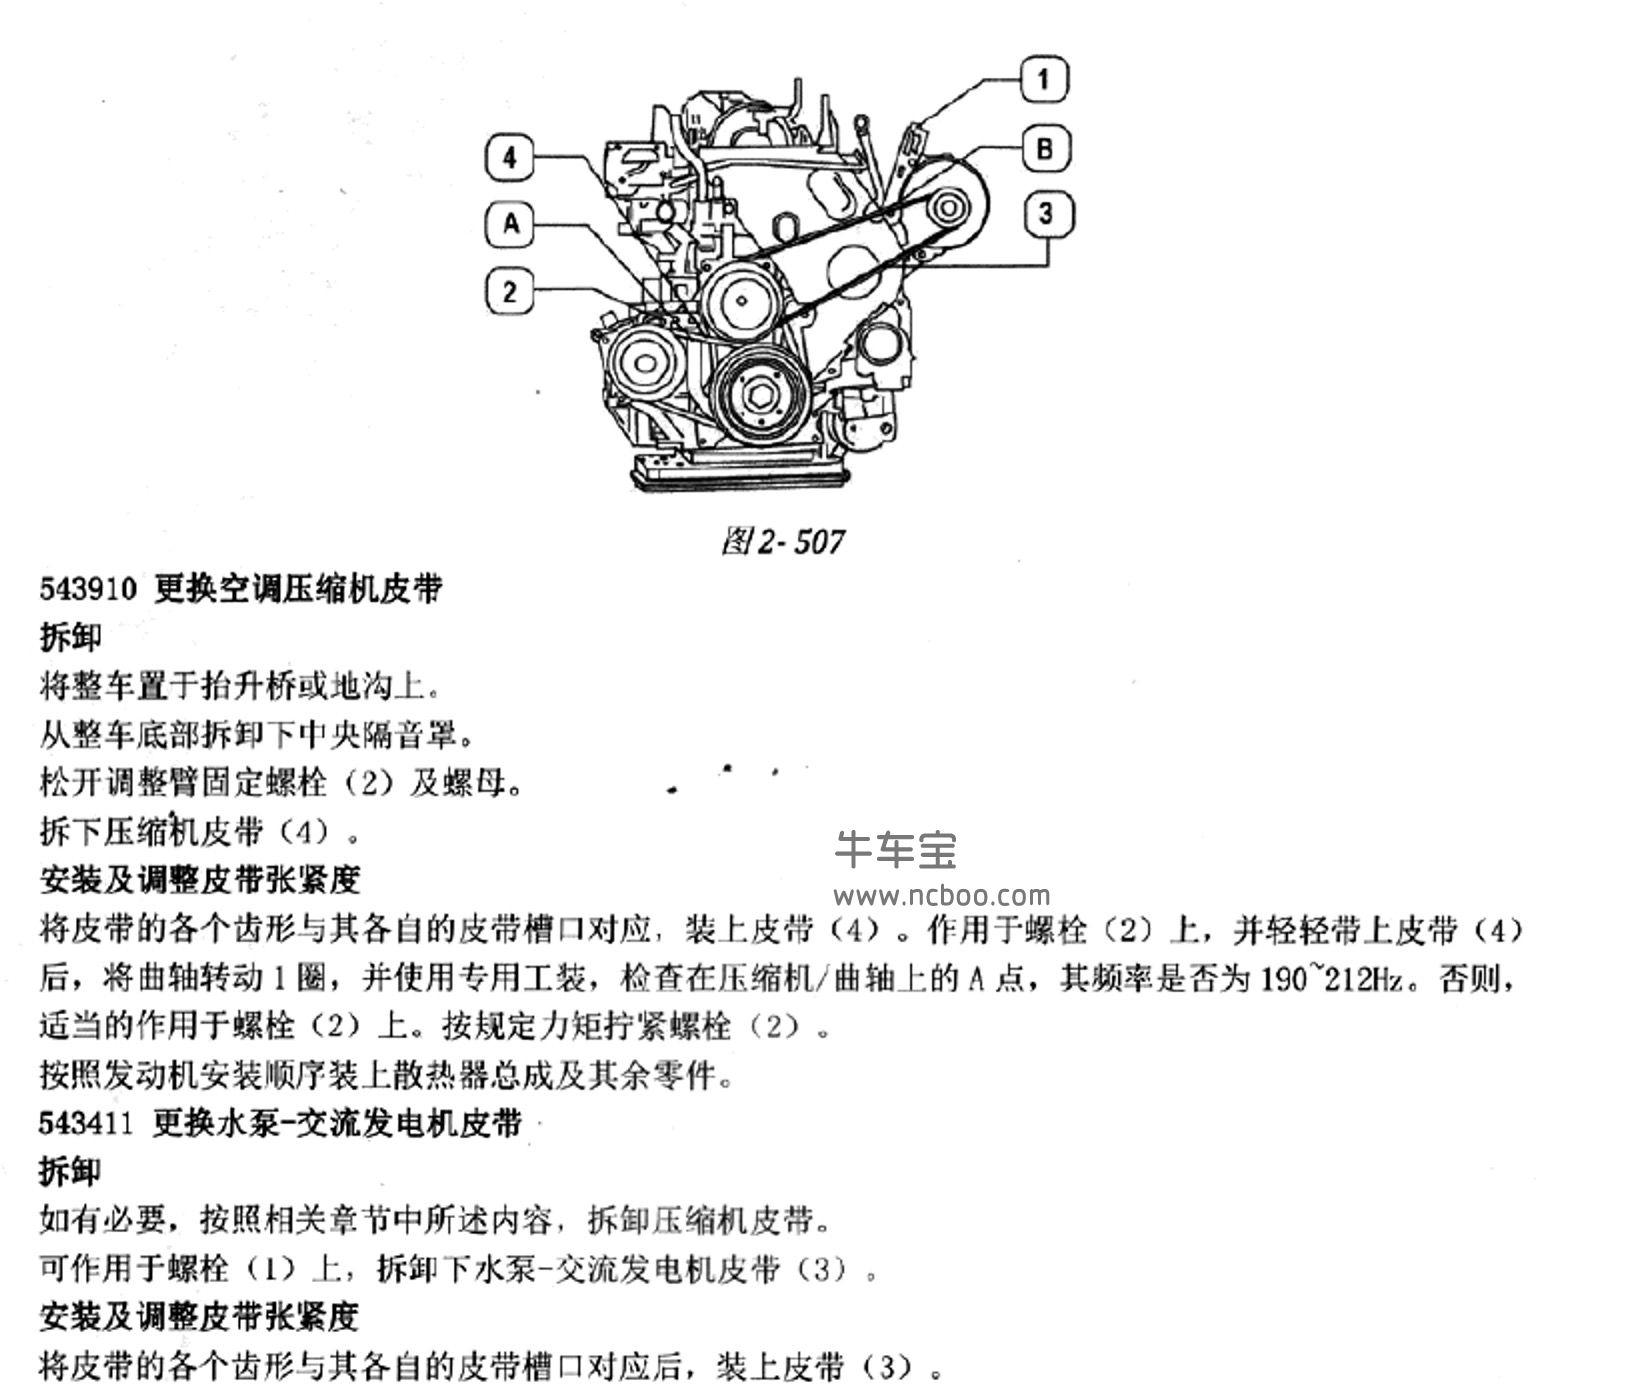 2015-2016款南京依维柯得意Turbo Dail原厂维修手册(含电路图)